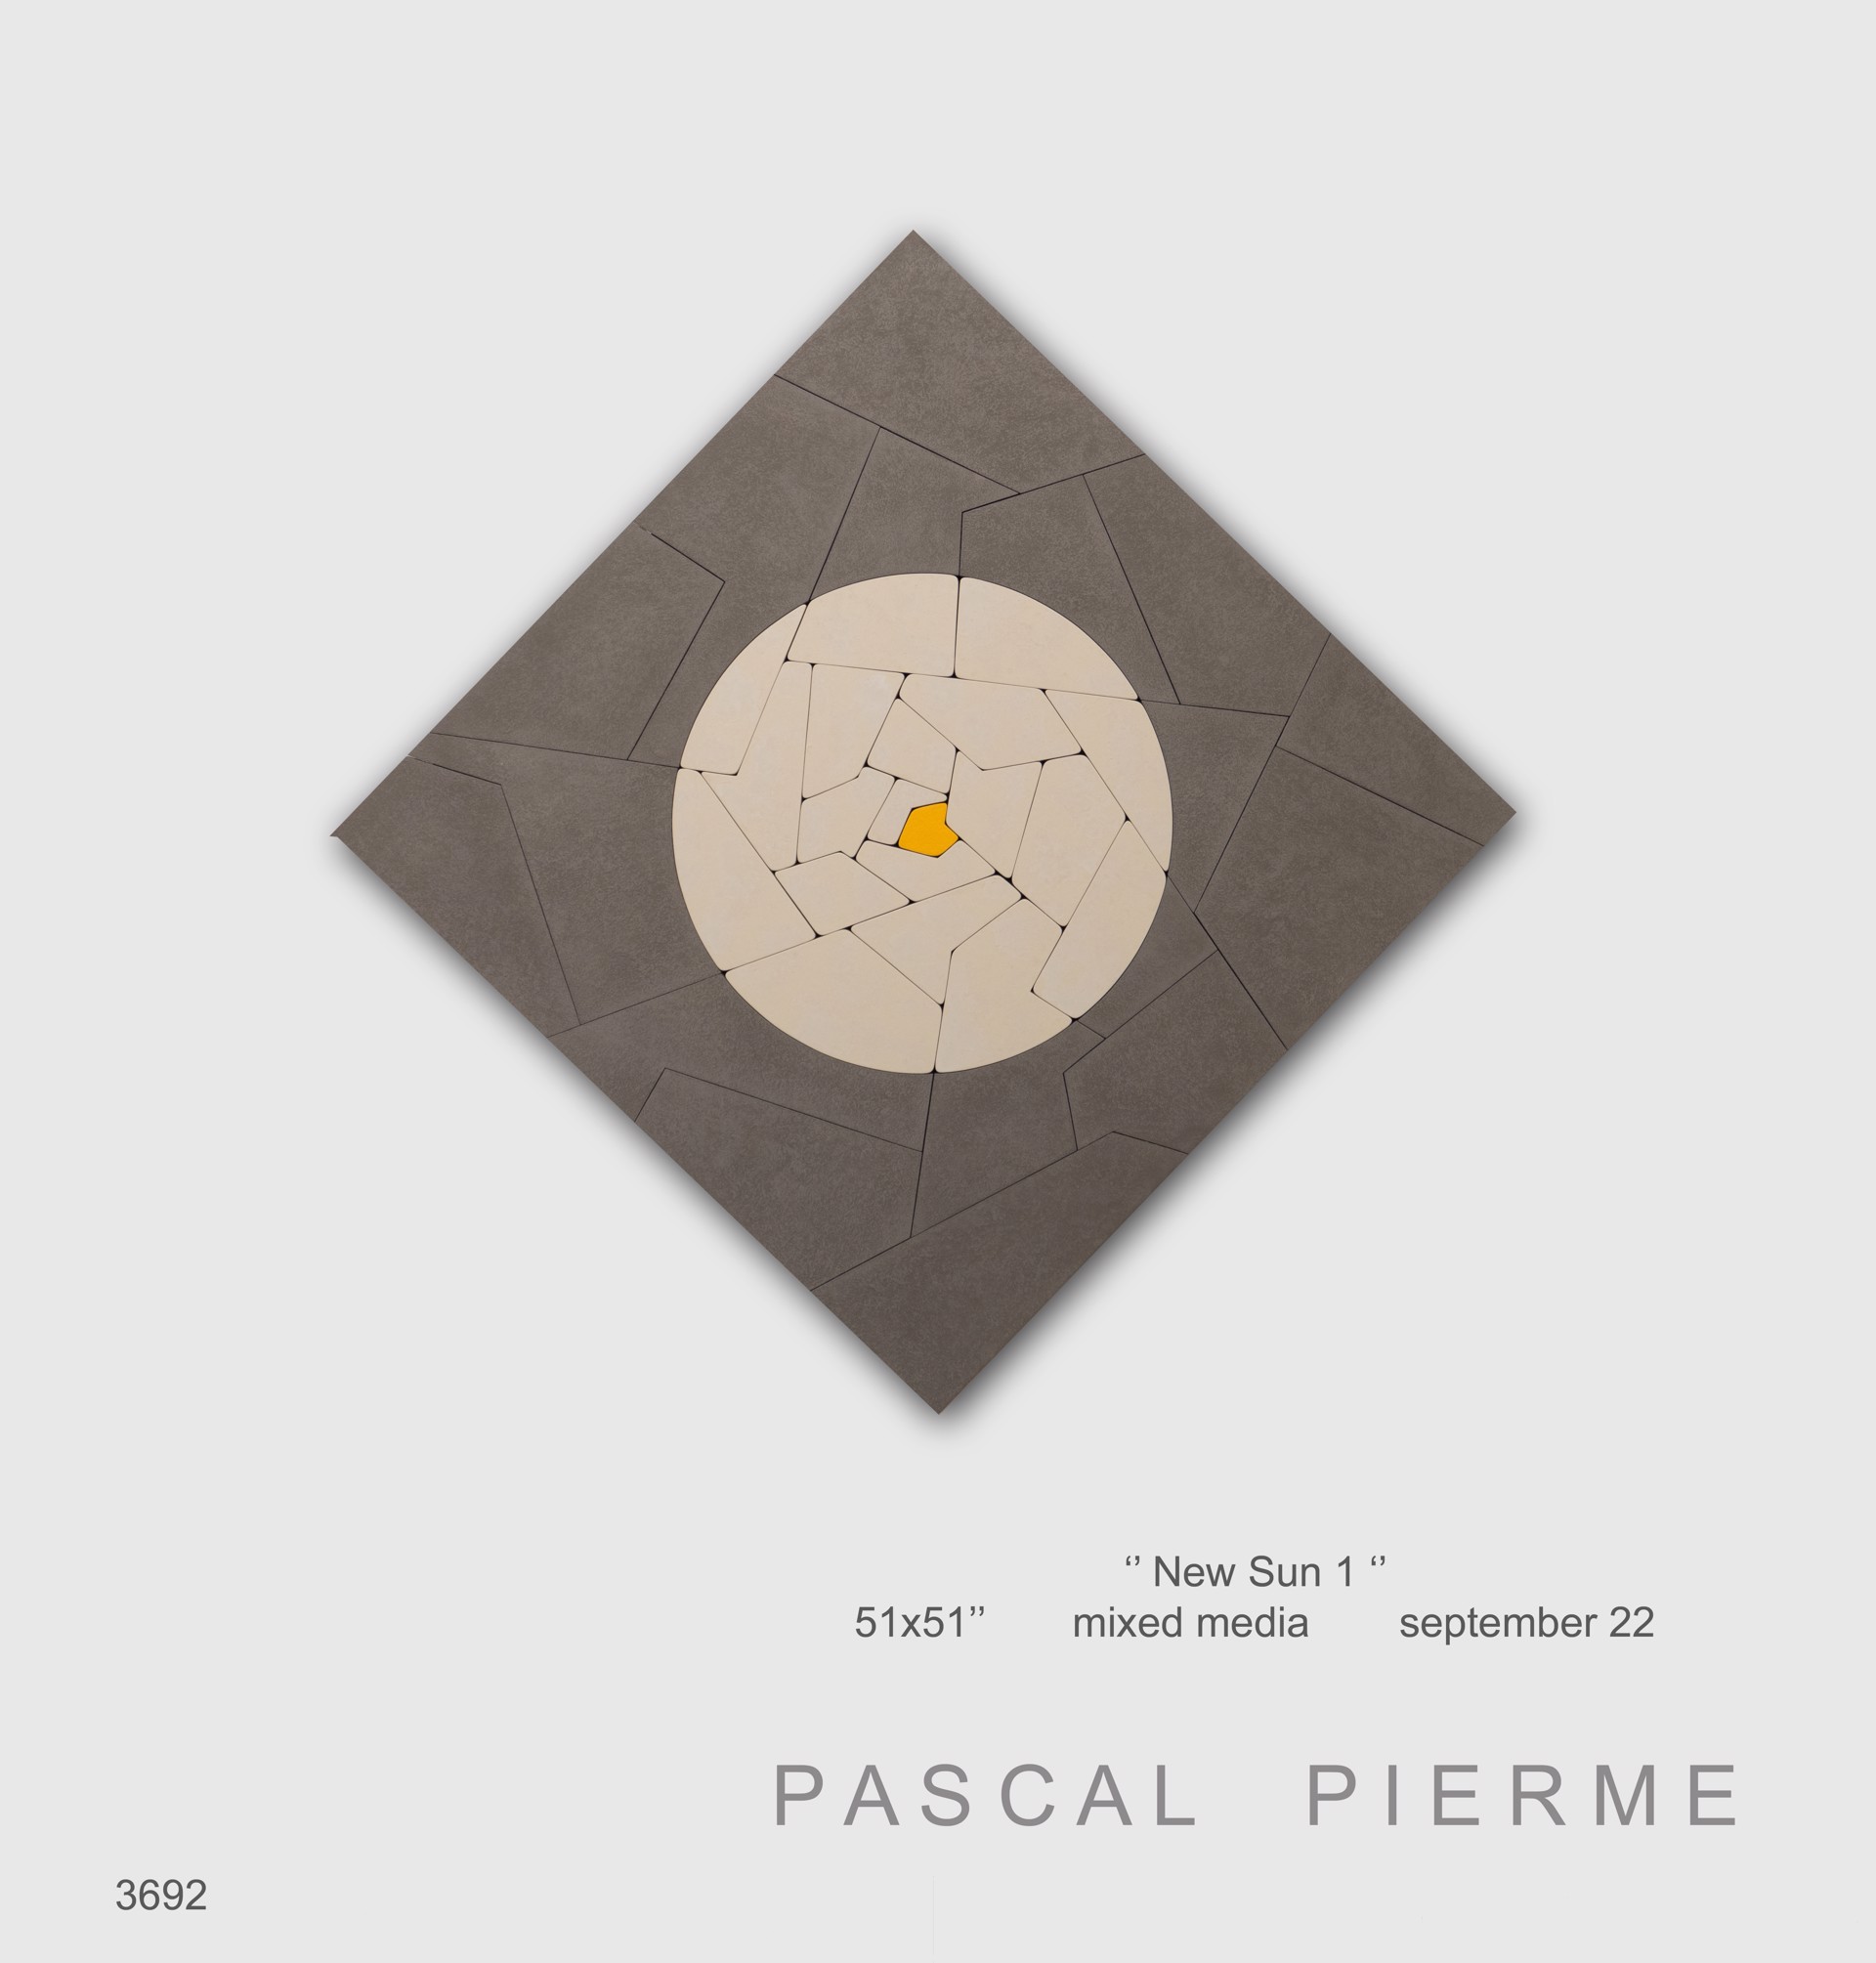 New Sun 1 by Pascal Piermé